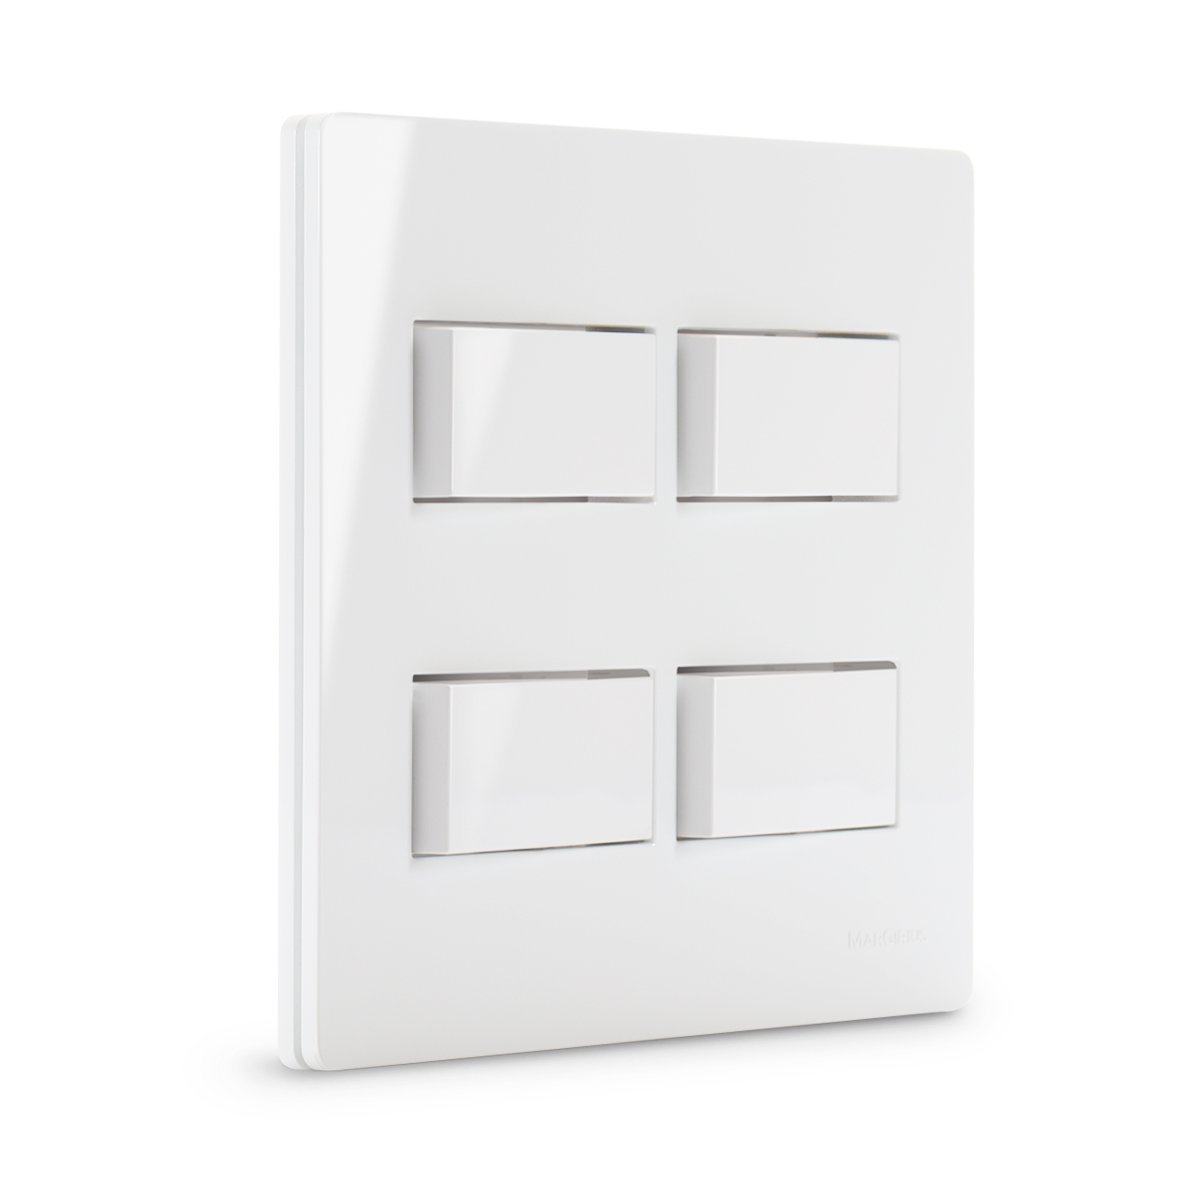 Conjunto 4 Interruptores Simples Separado 4x4 Infiniti Cor:branco - 1